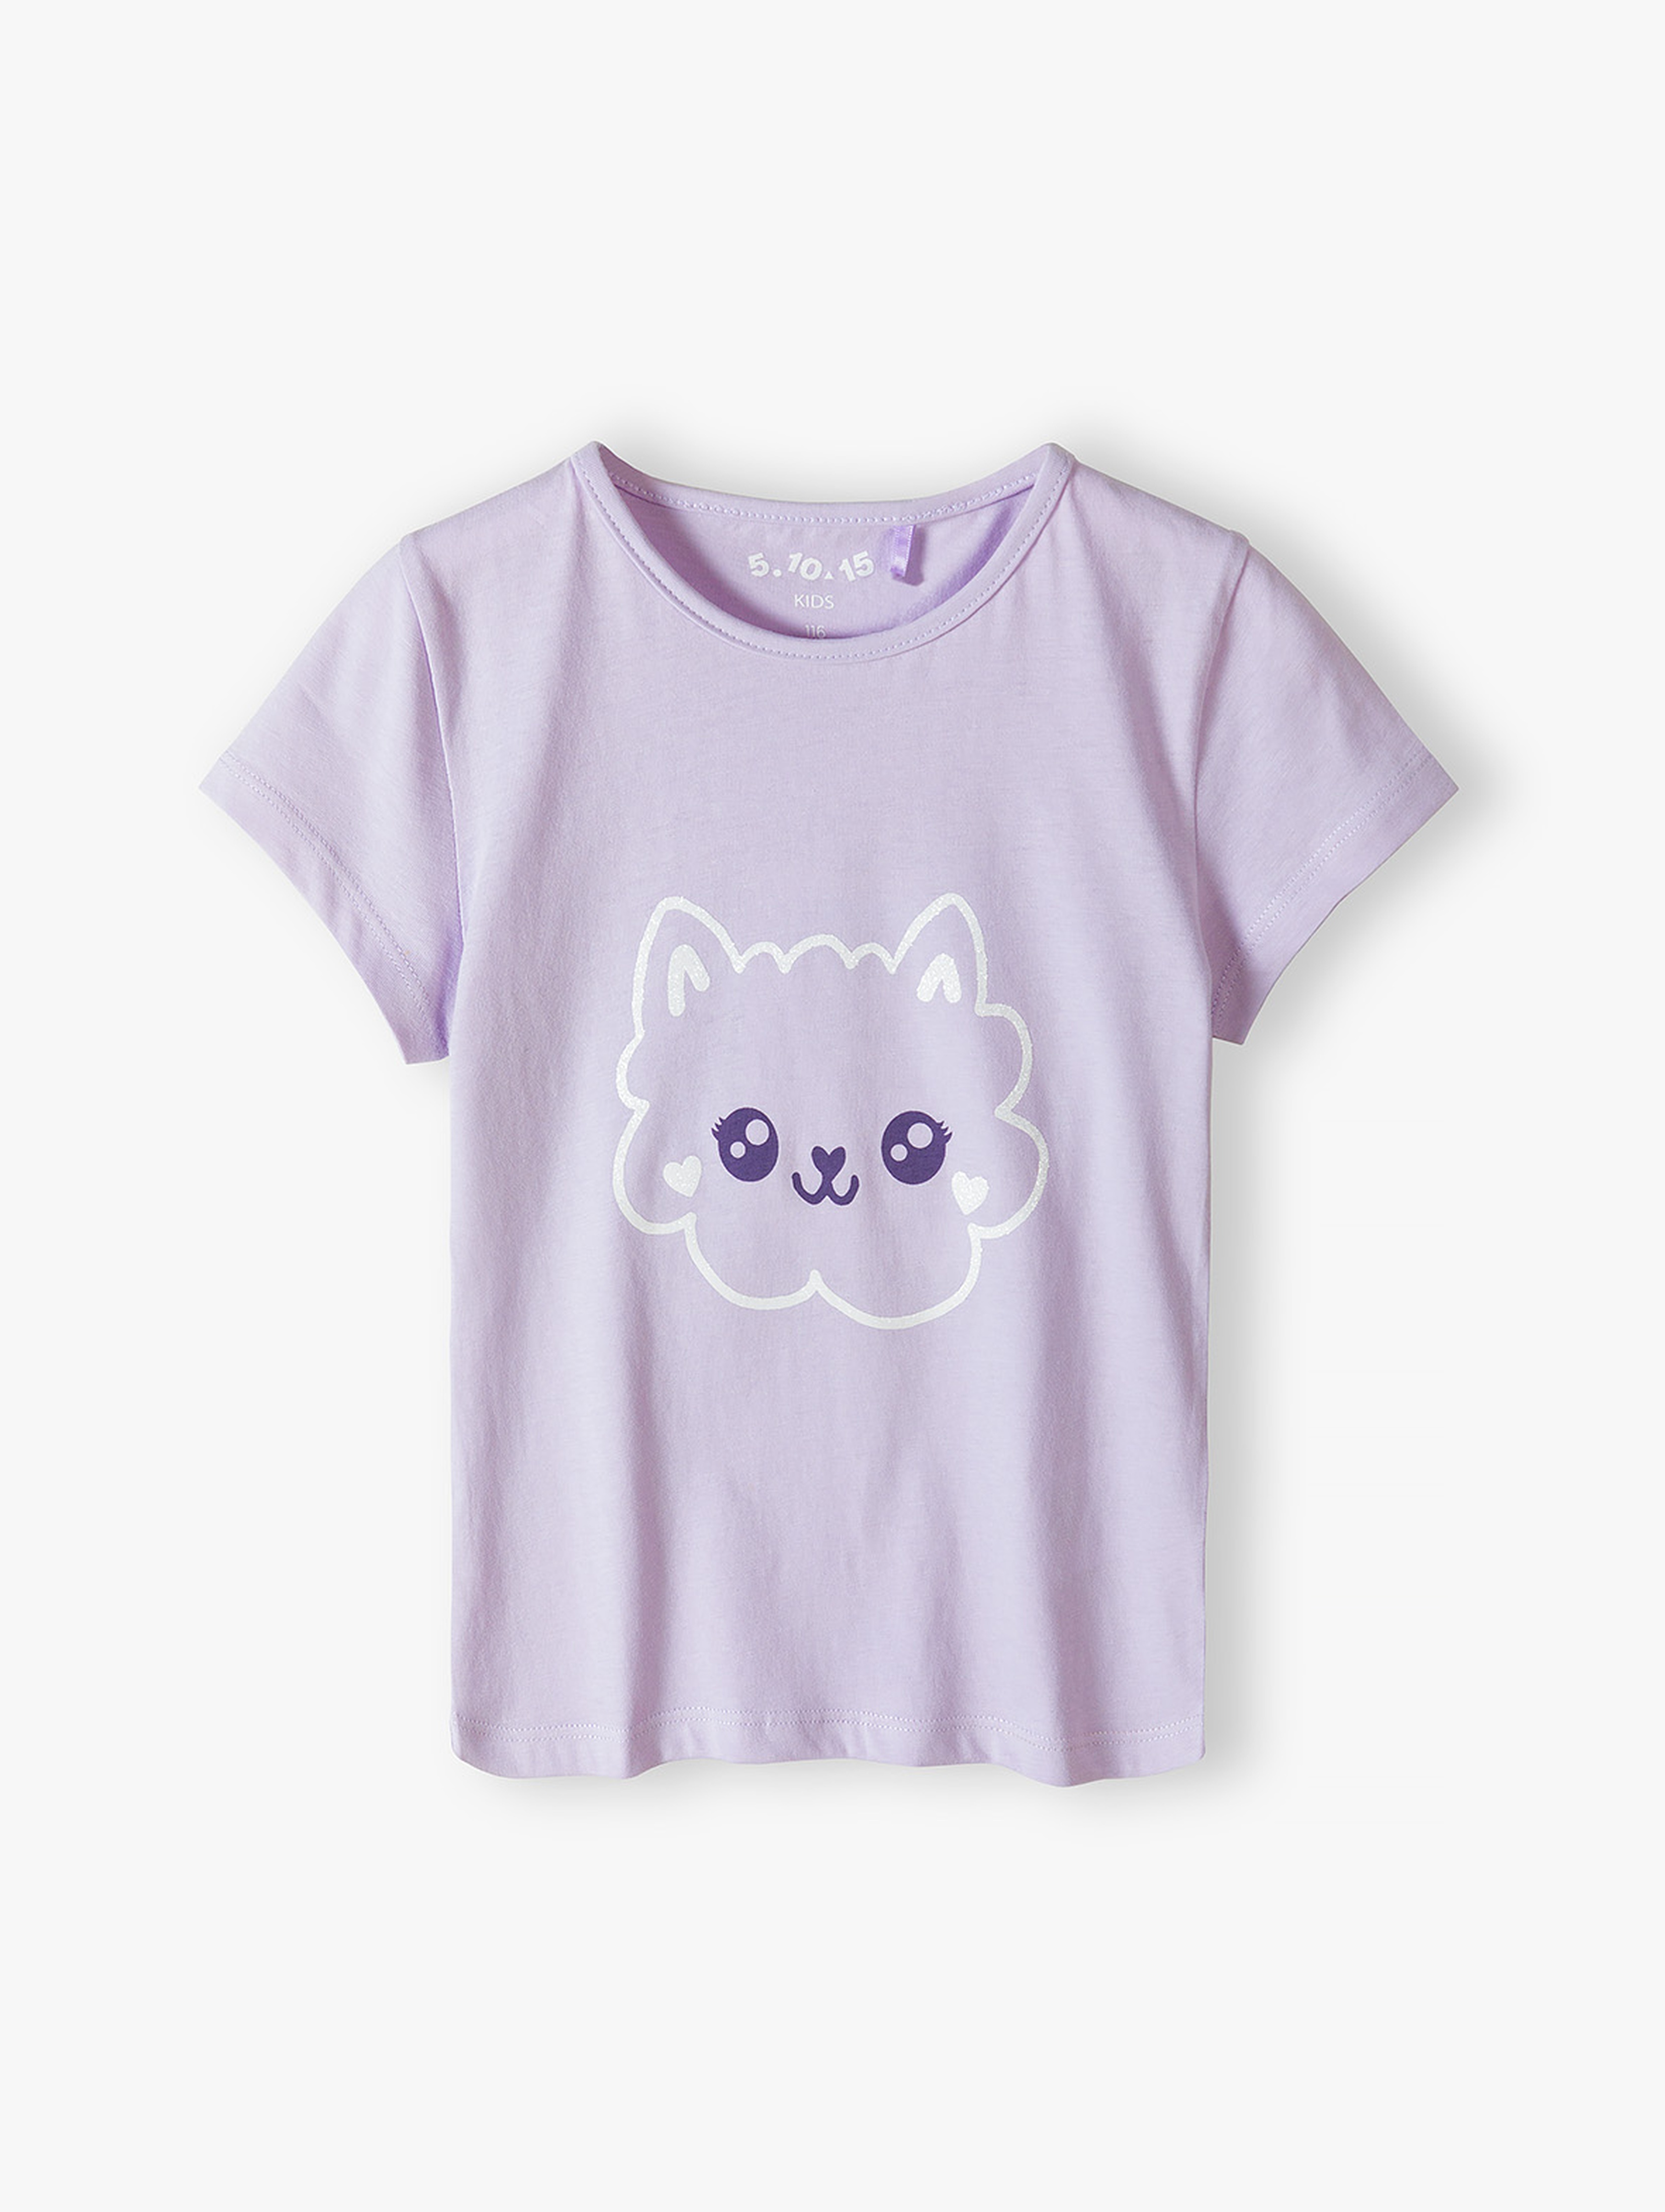 Fioletowy dzianinowy t-shirt dla dziewczynki - 5.10.15.